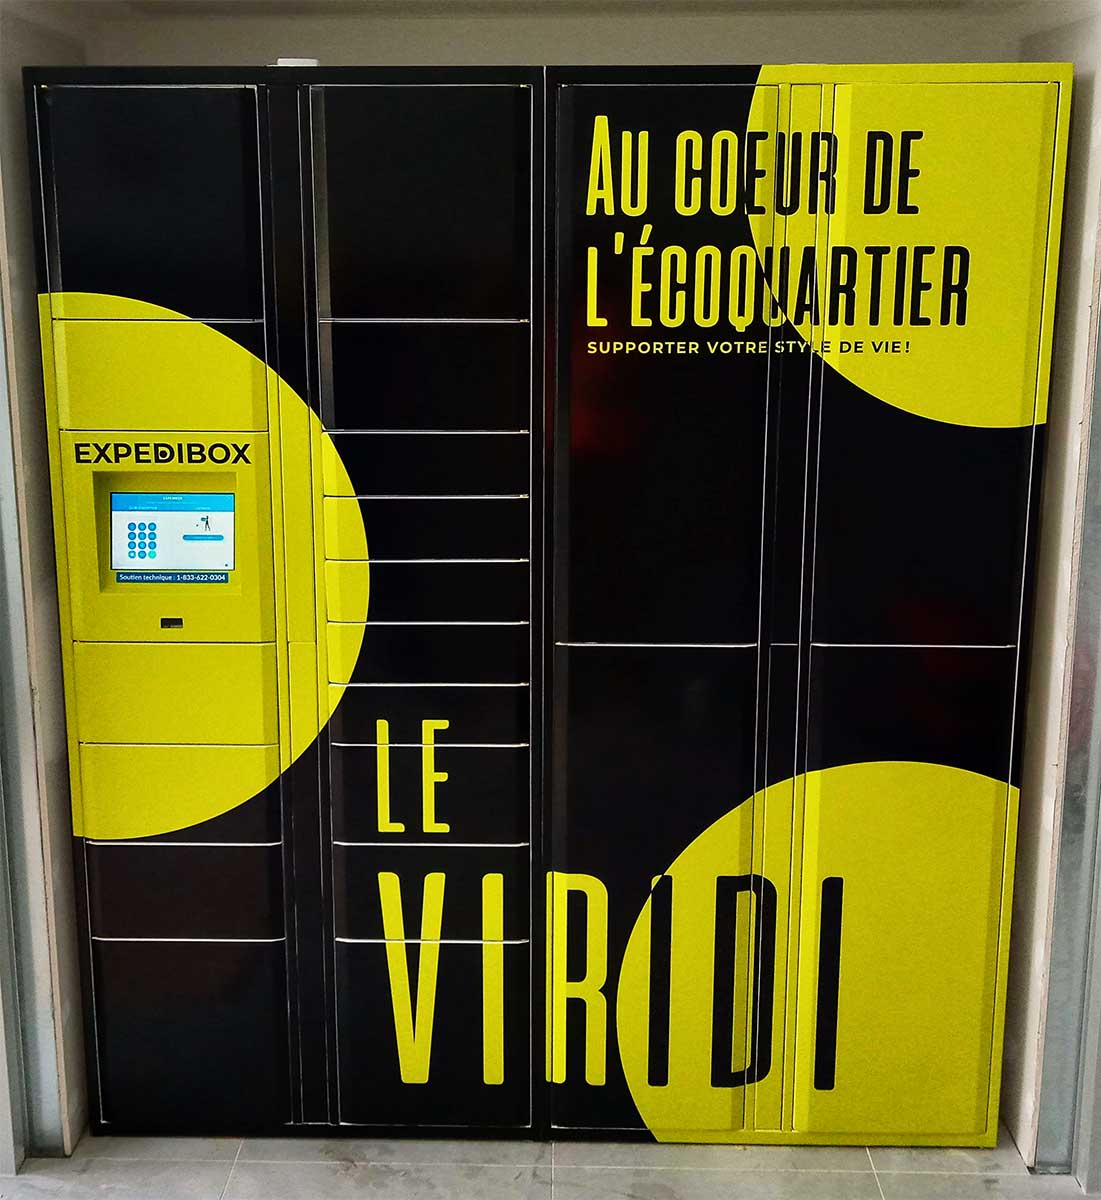 The Viridi